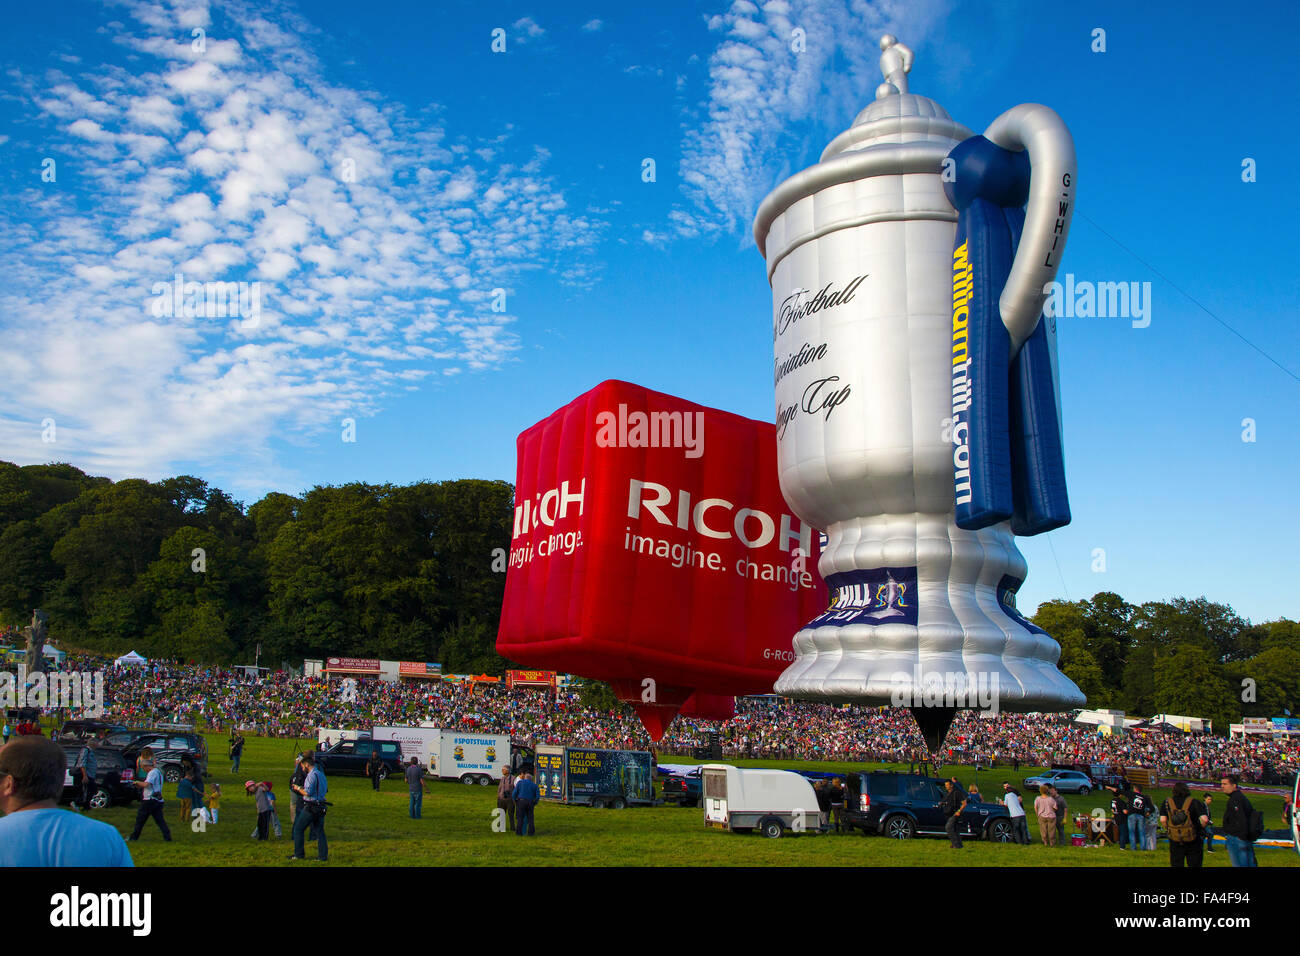 Asociación escocesa Challenge Cup y Ricoh globos de aire caliente en el Bristol International Balloon Fiesta 2015 Aire caliente Foto de stock